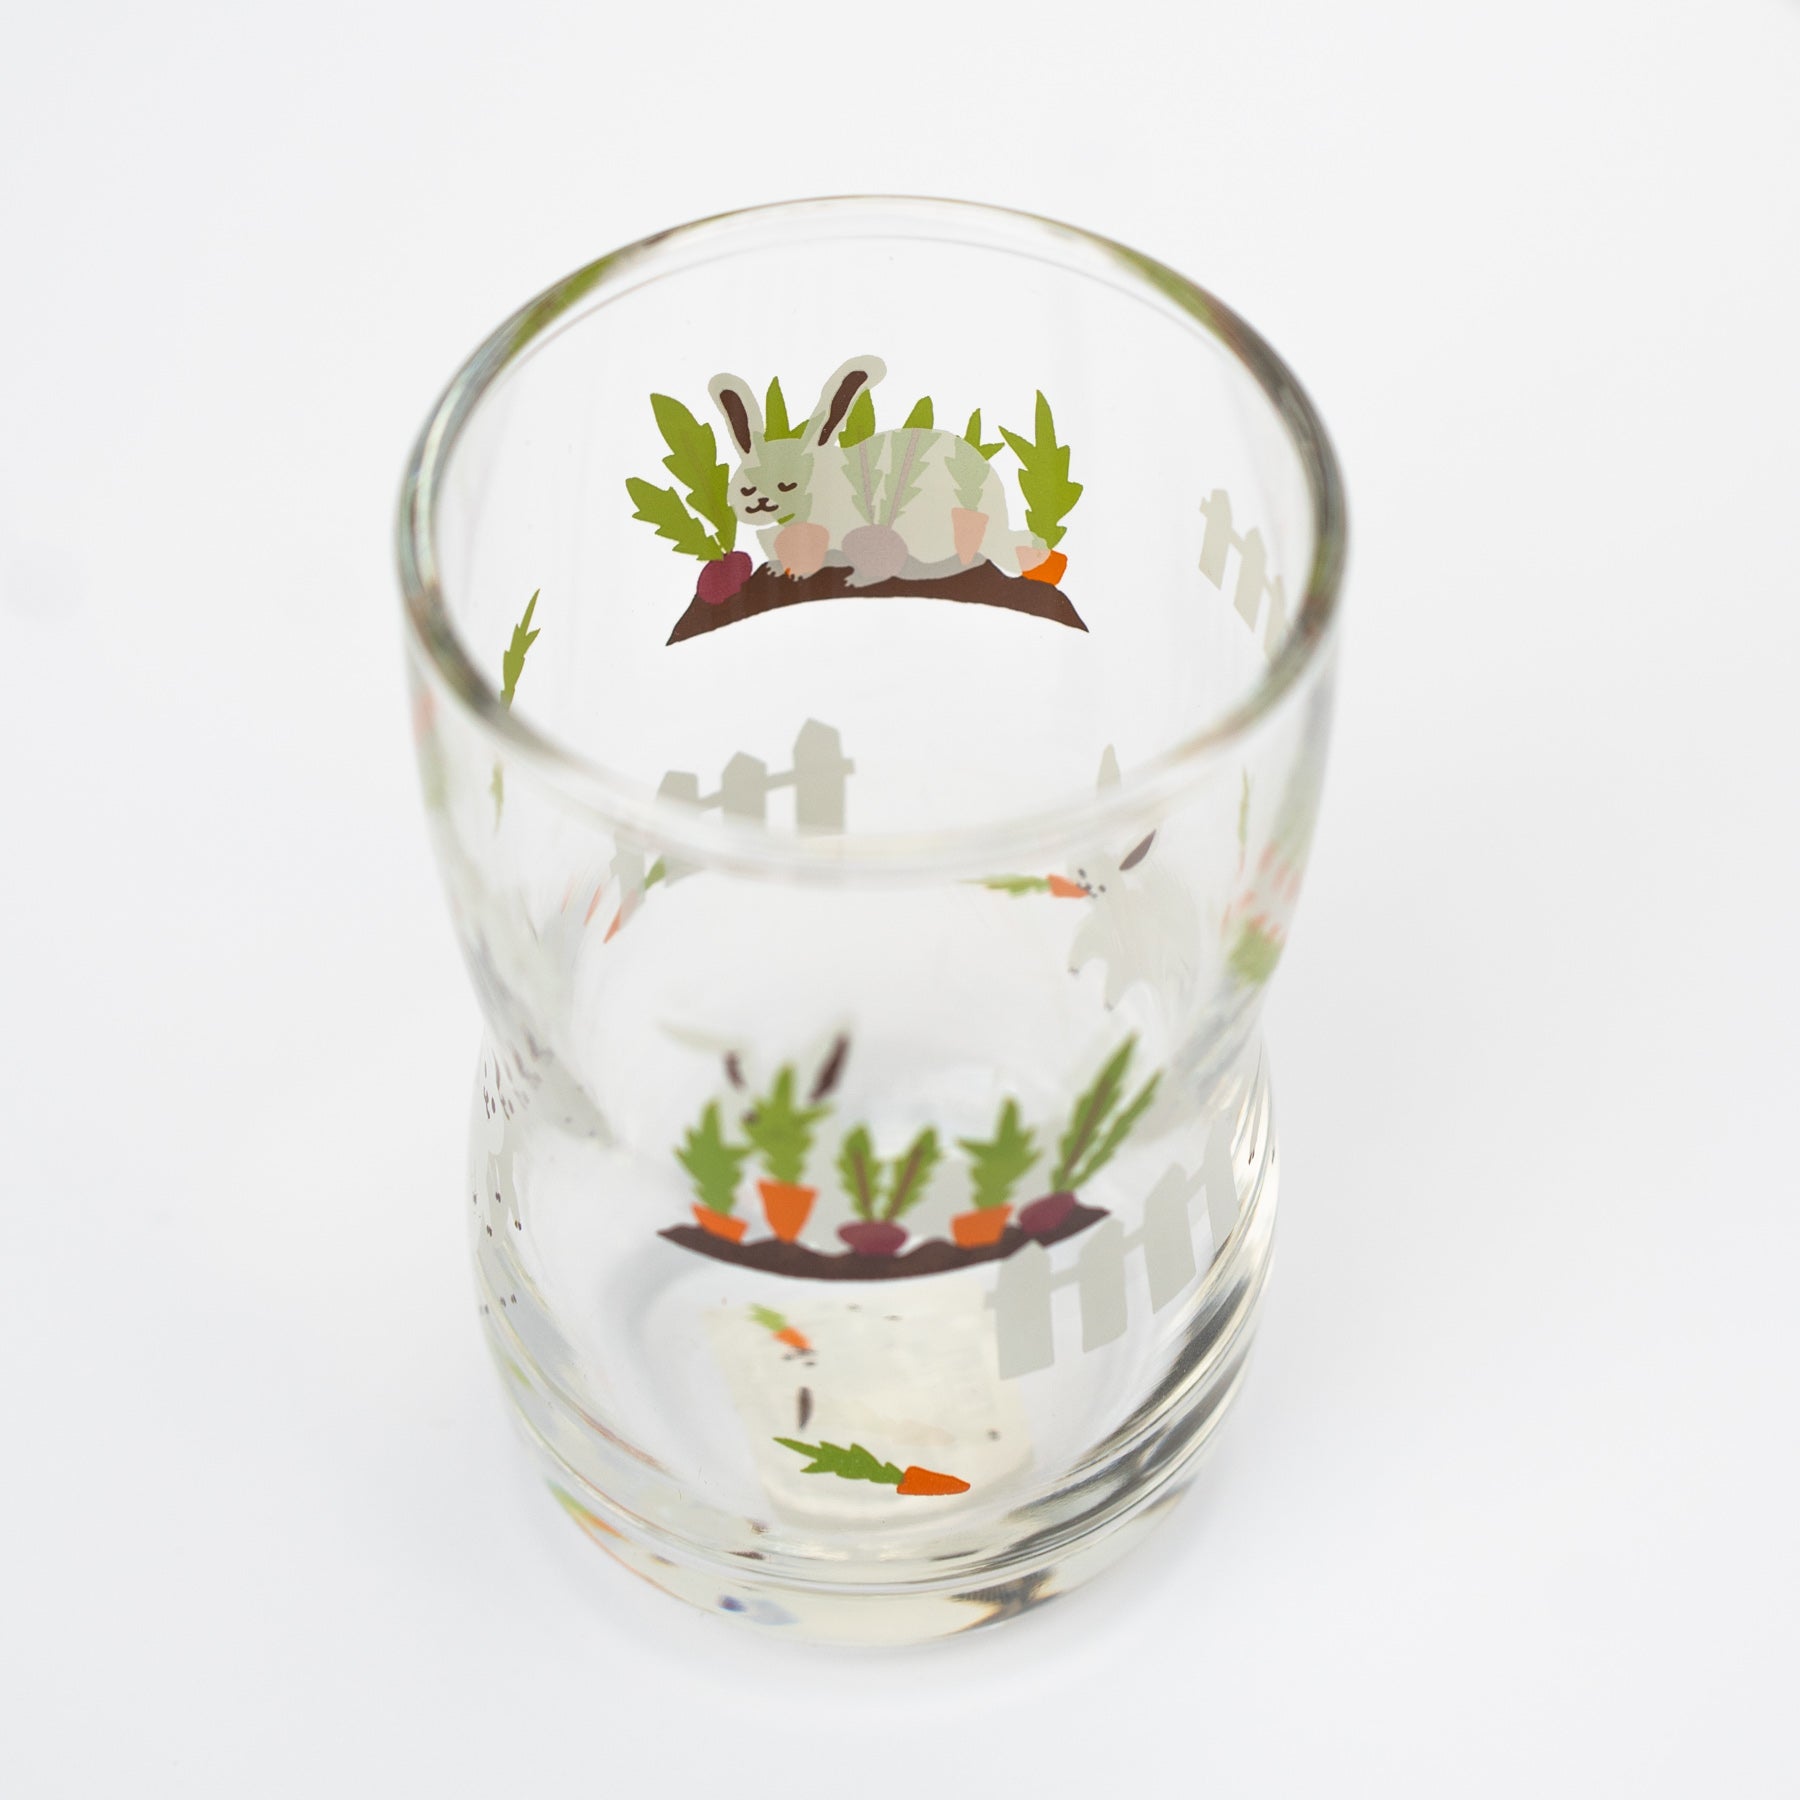 Japanese kids glass with rabbit print by IIshizuka Glassshu